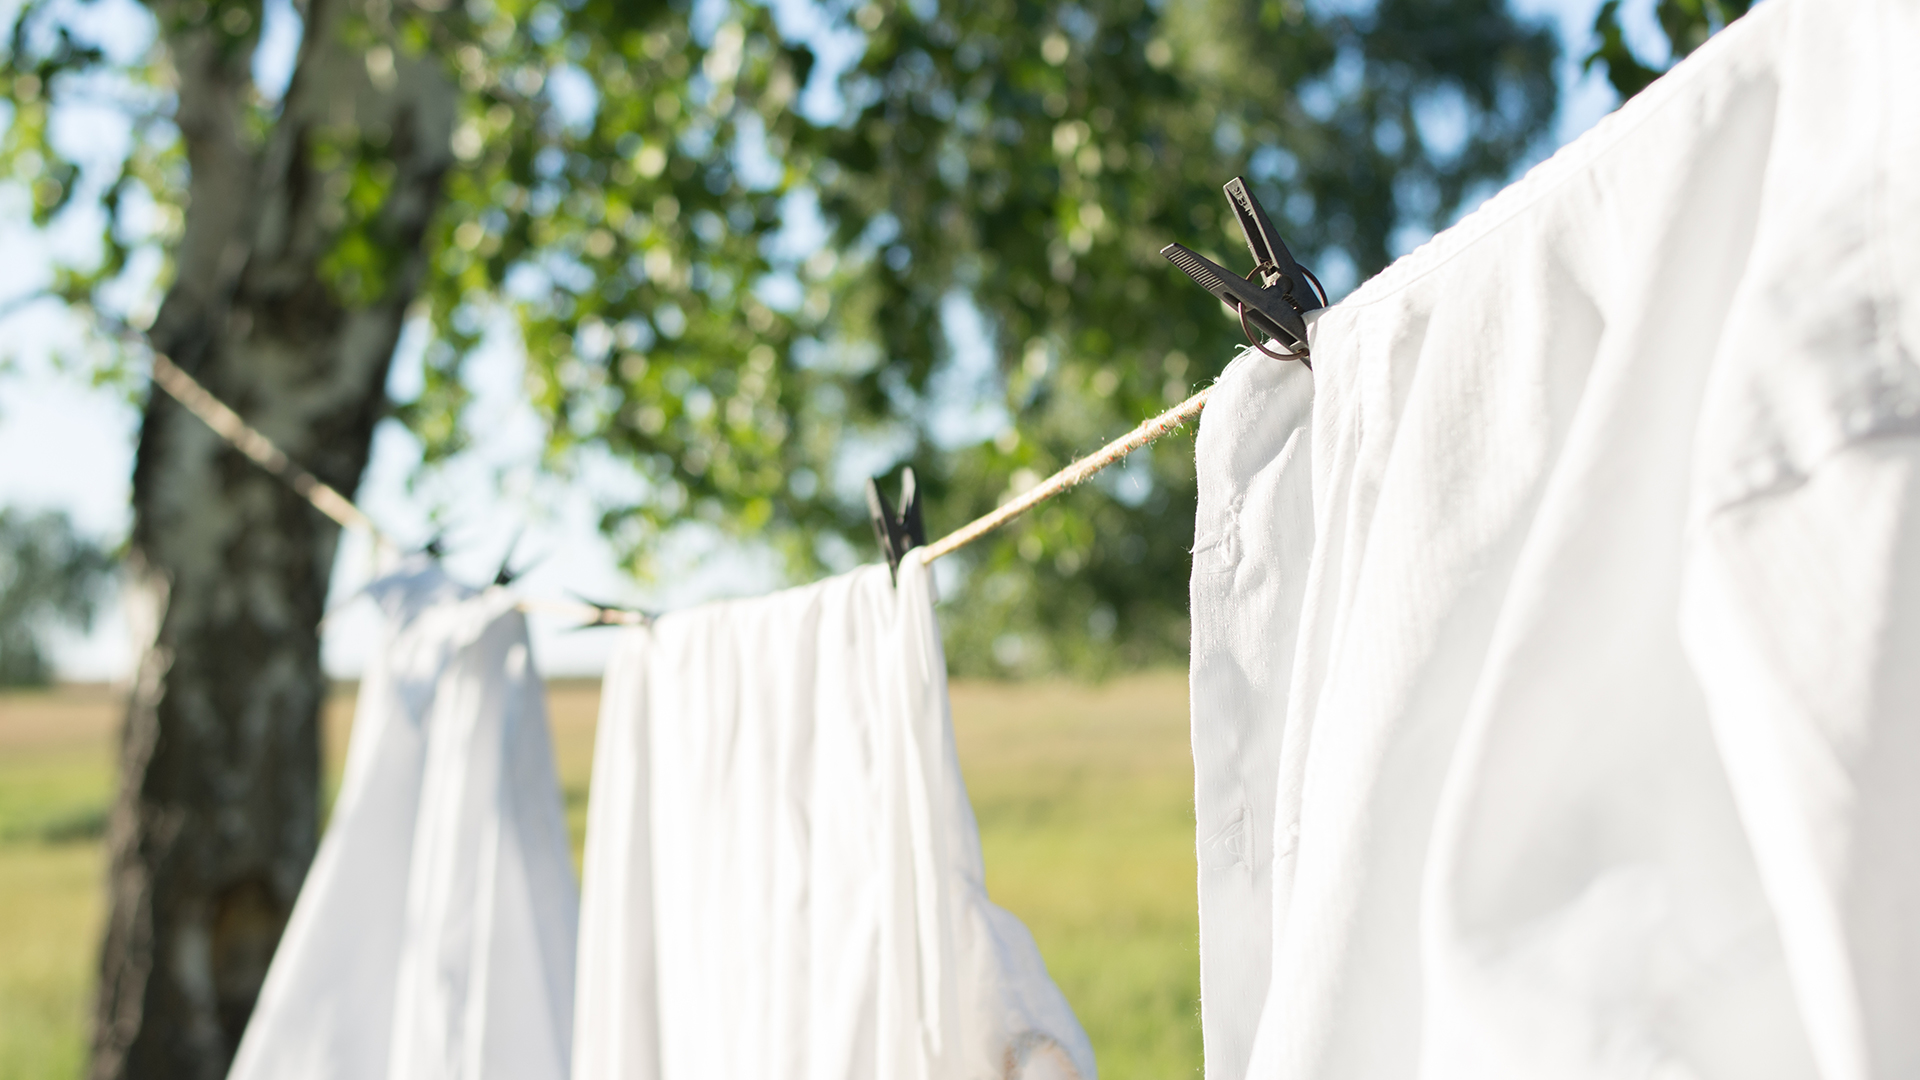 ซักผ้ายังไงให้ดีต่อผ้า ดีต่อโลก